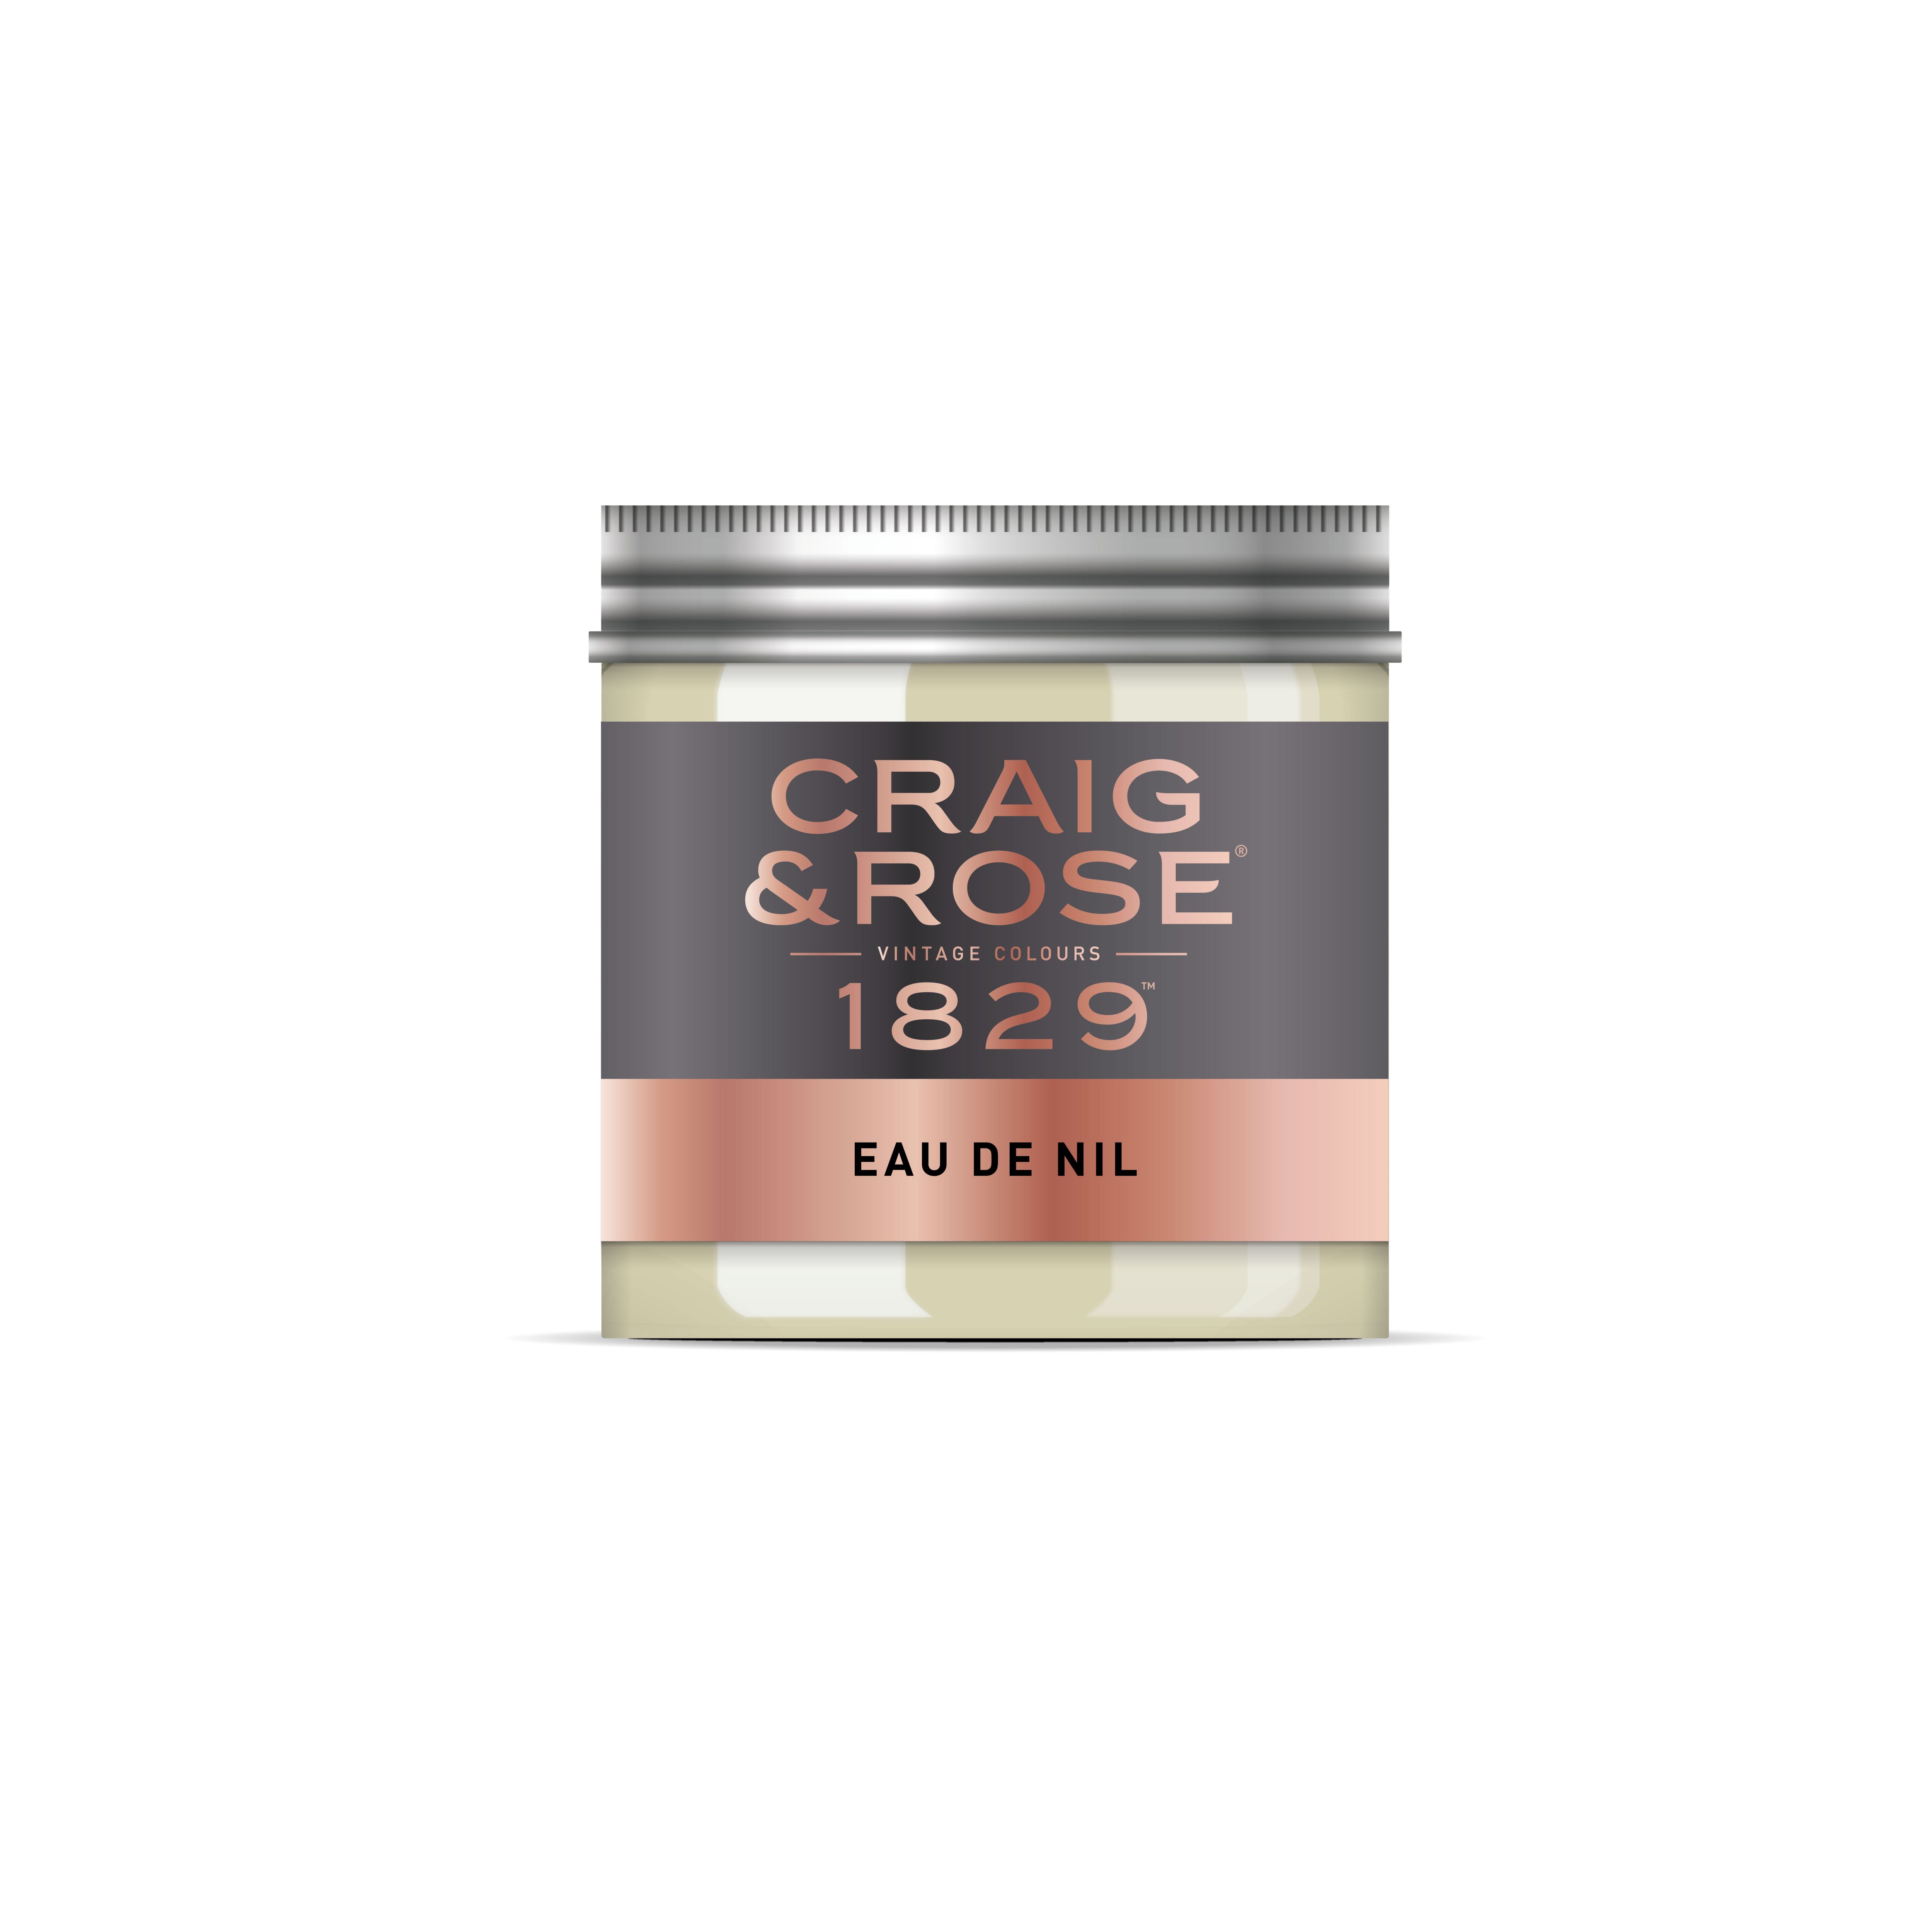 Craig & Rose 1829 Eau de Nil Chalky Emulsion paint, 50ml